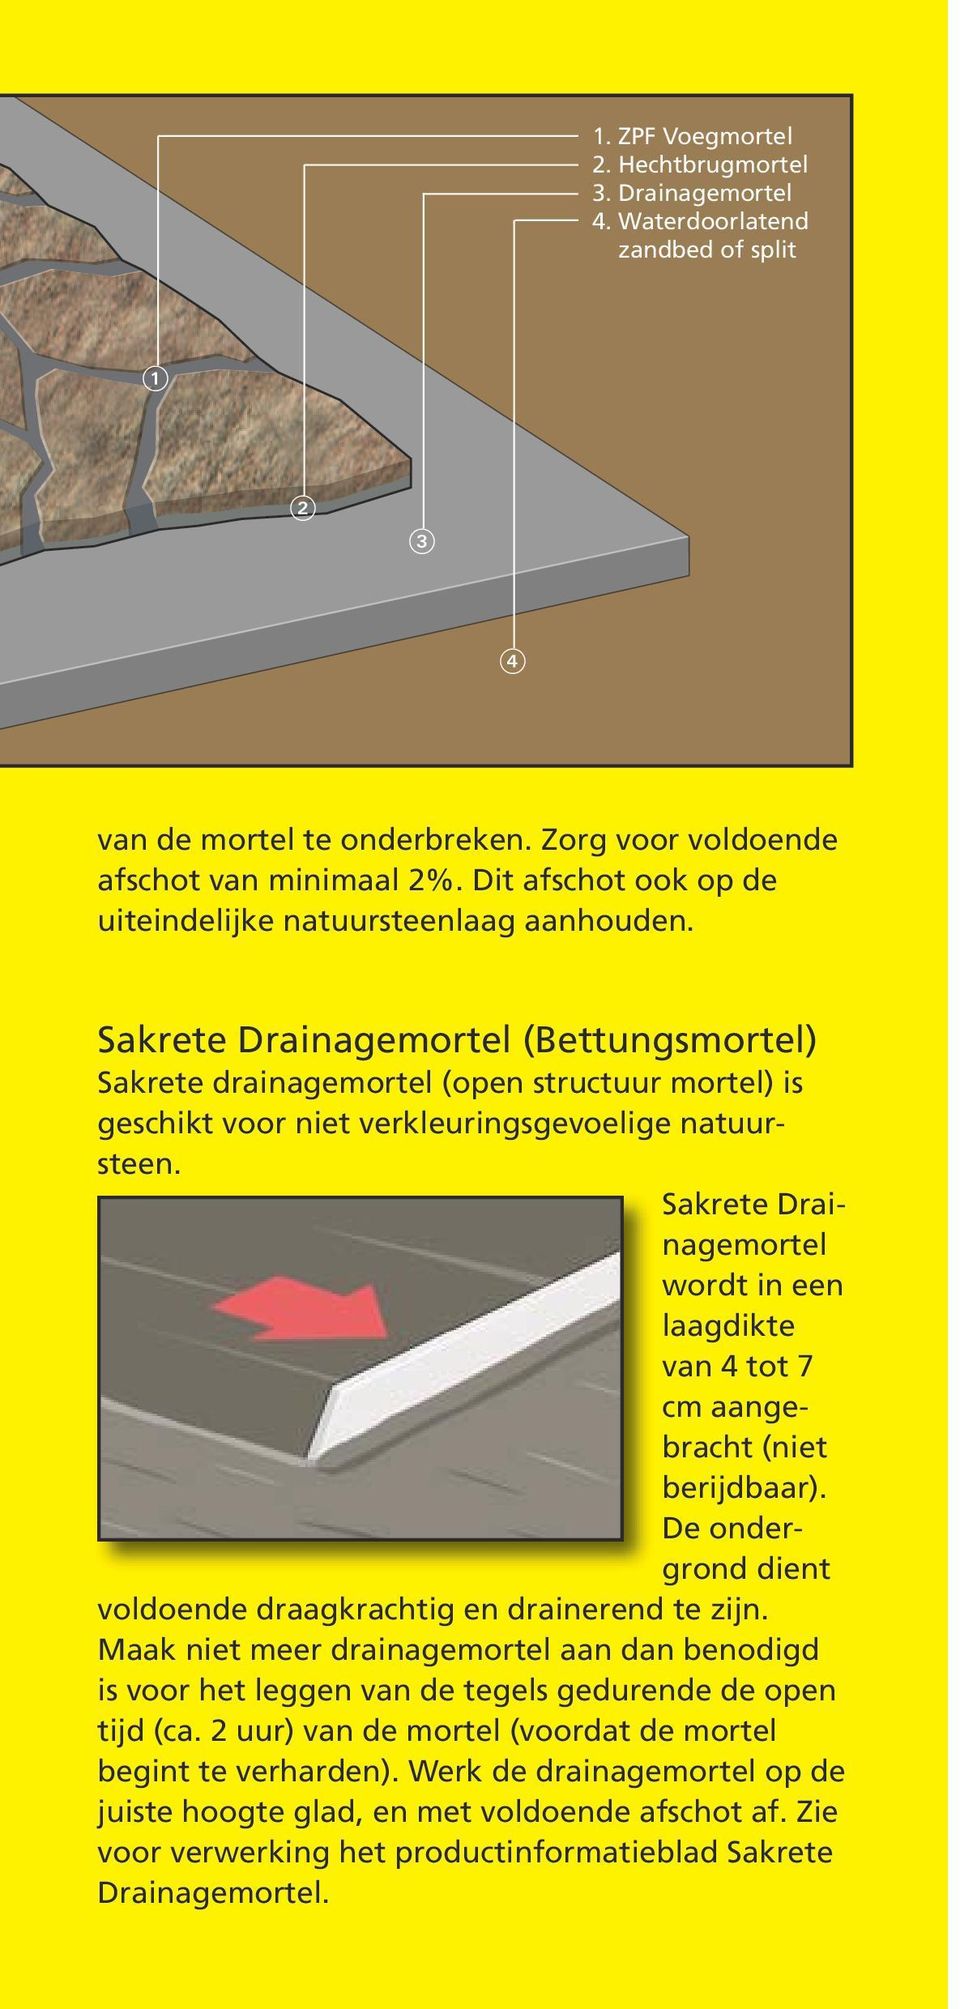 Sakrete Drainagemortel (Bettungsmortel) Sakrete drainagemortel (open structuur mortel) is geschikt voor niet verkleuringsgevoelige natuursteen.